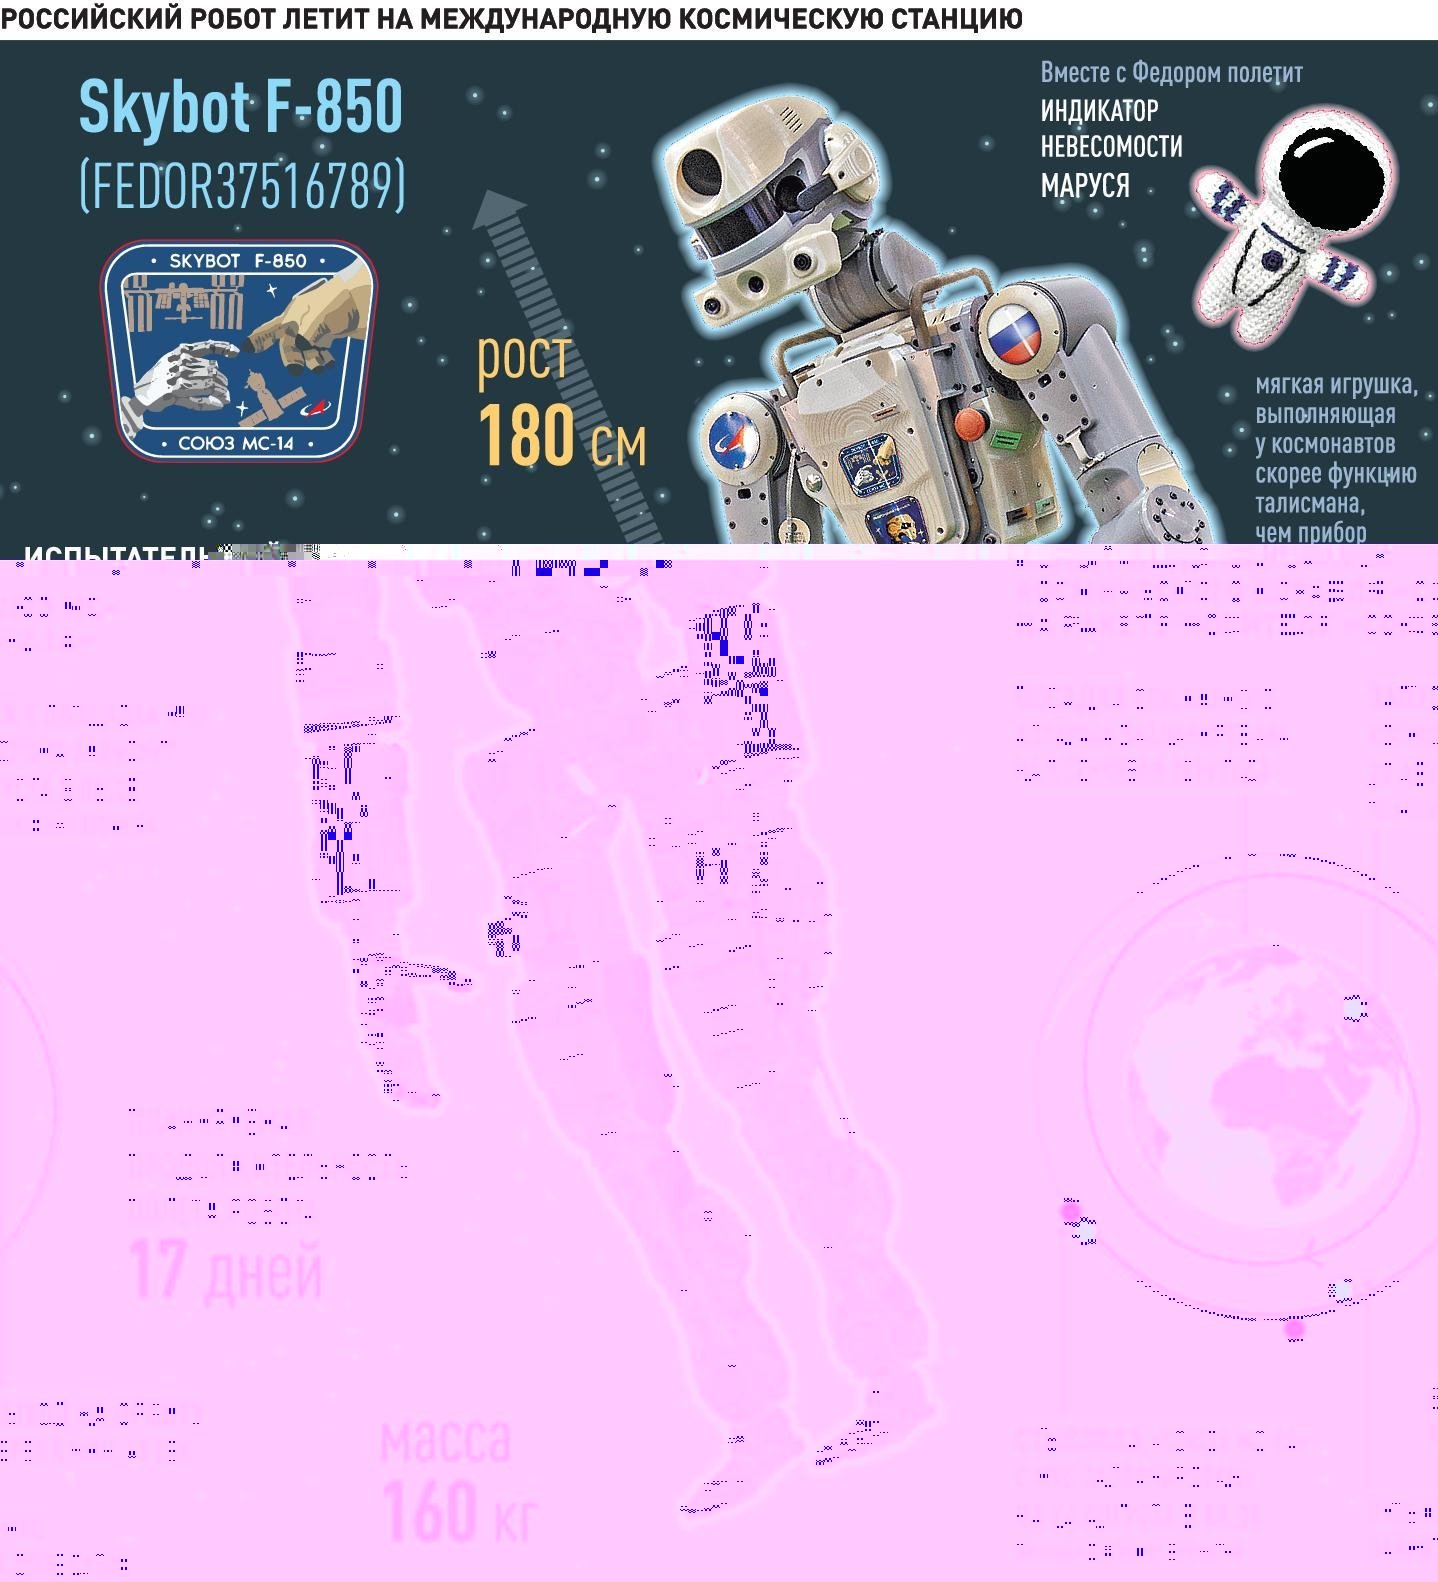 Инфографика миссии Skybot F-850. Фото Rg.ru